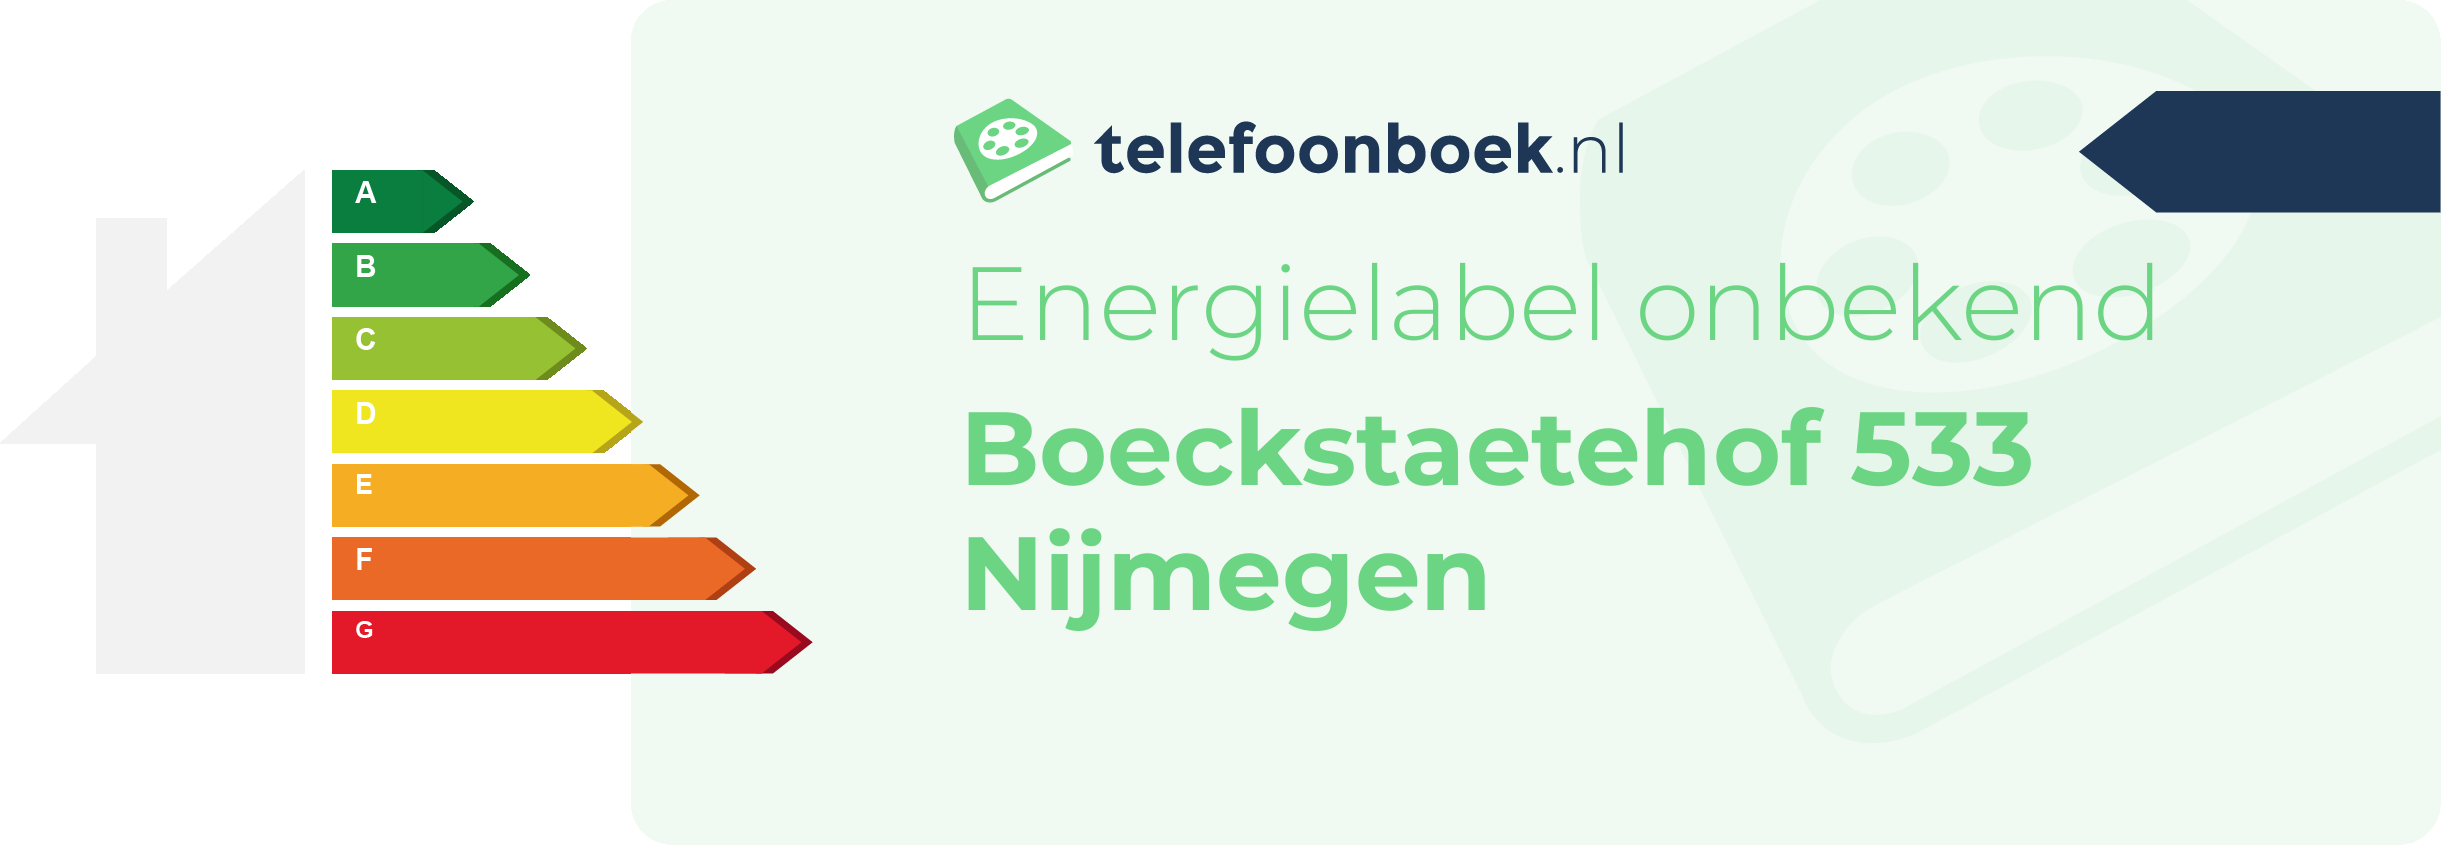 Energielabel Boeckstaetehof 533 Nijmegen